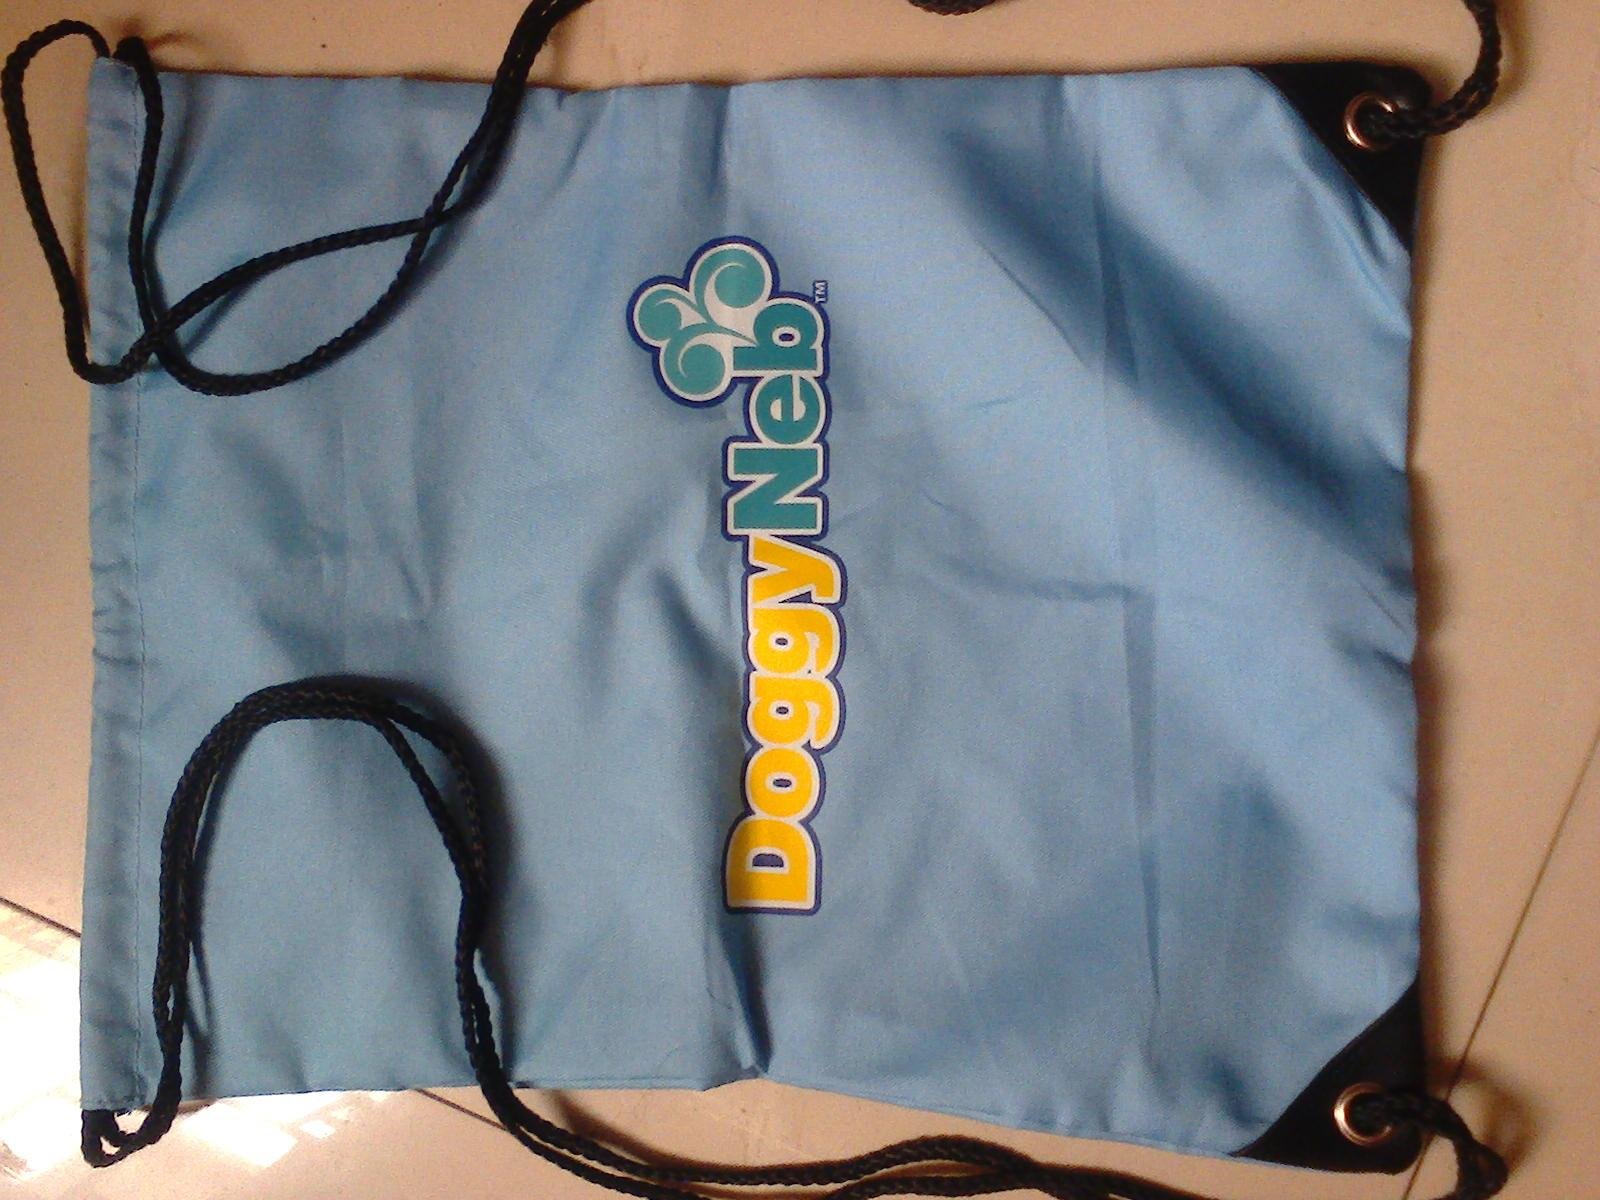 Portable atomizer bag 2